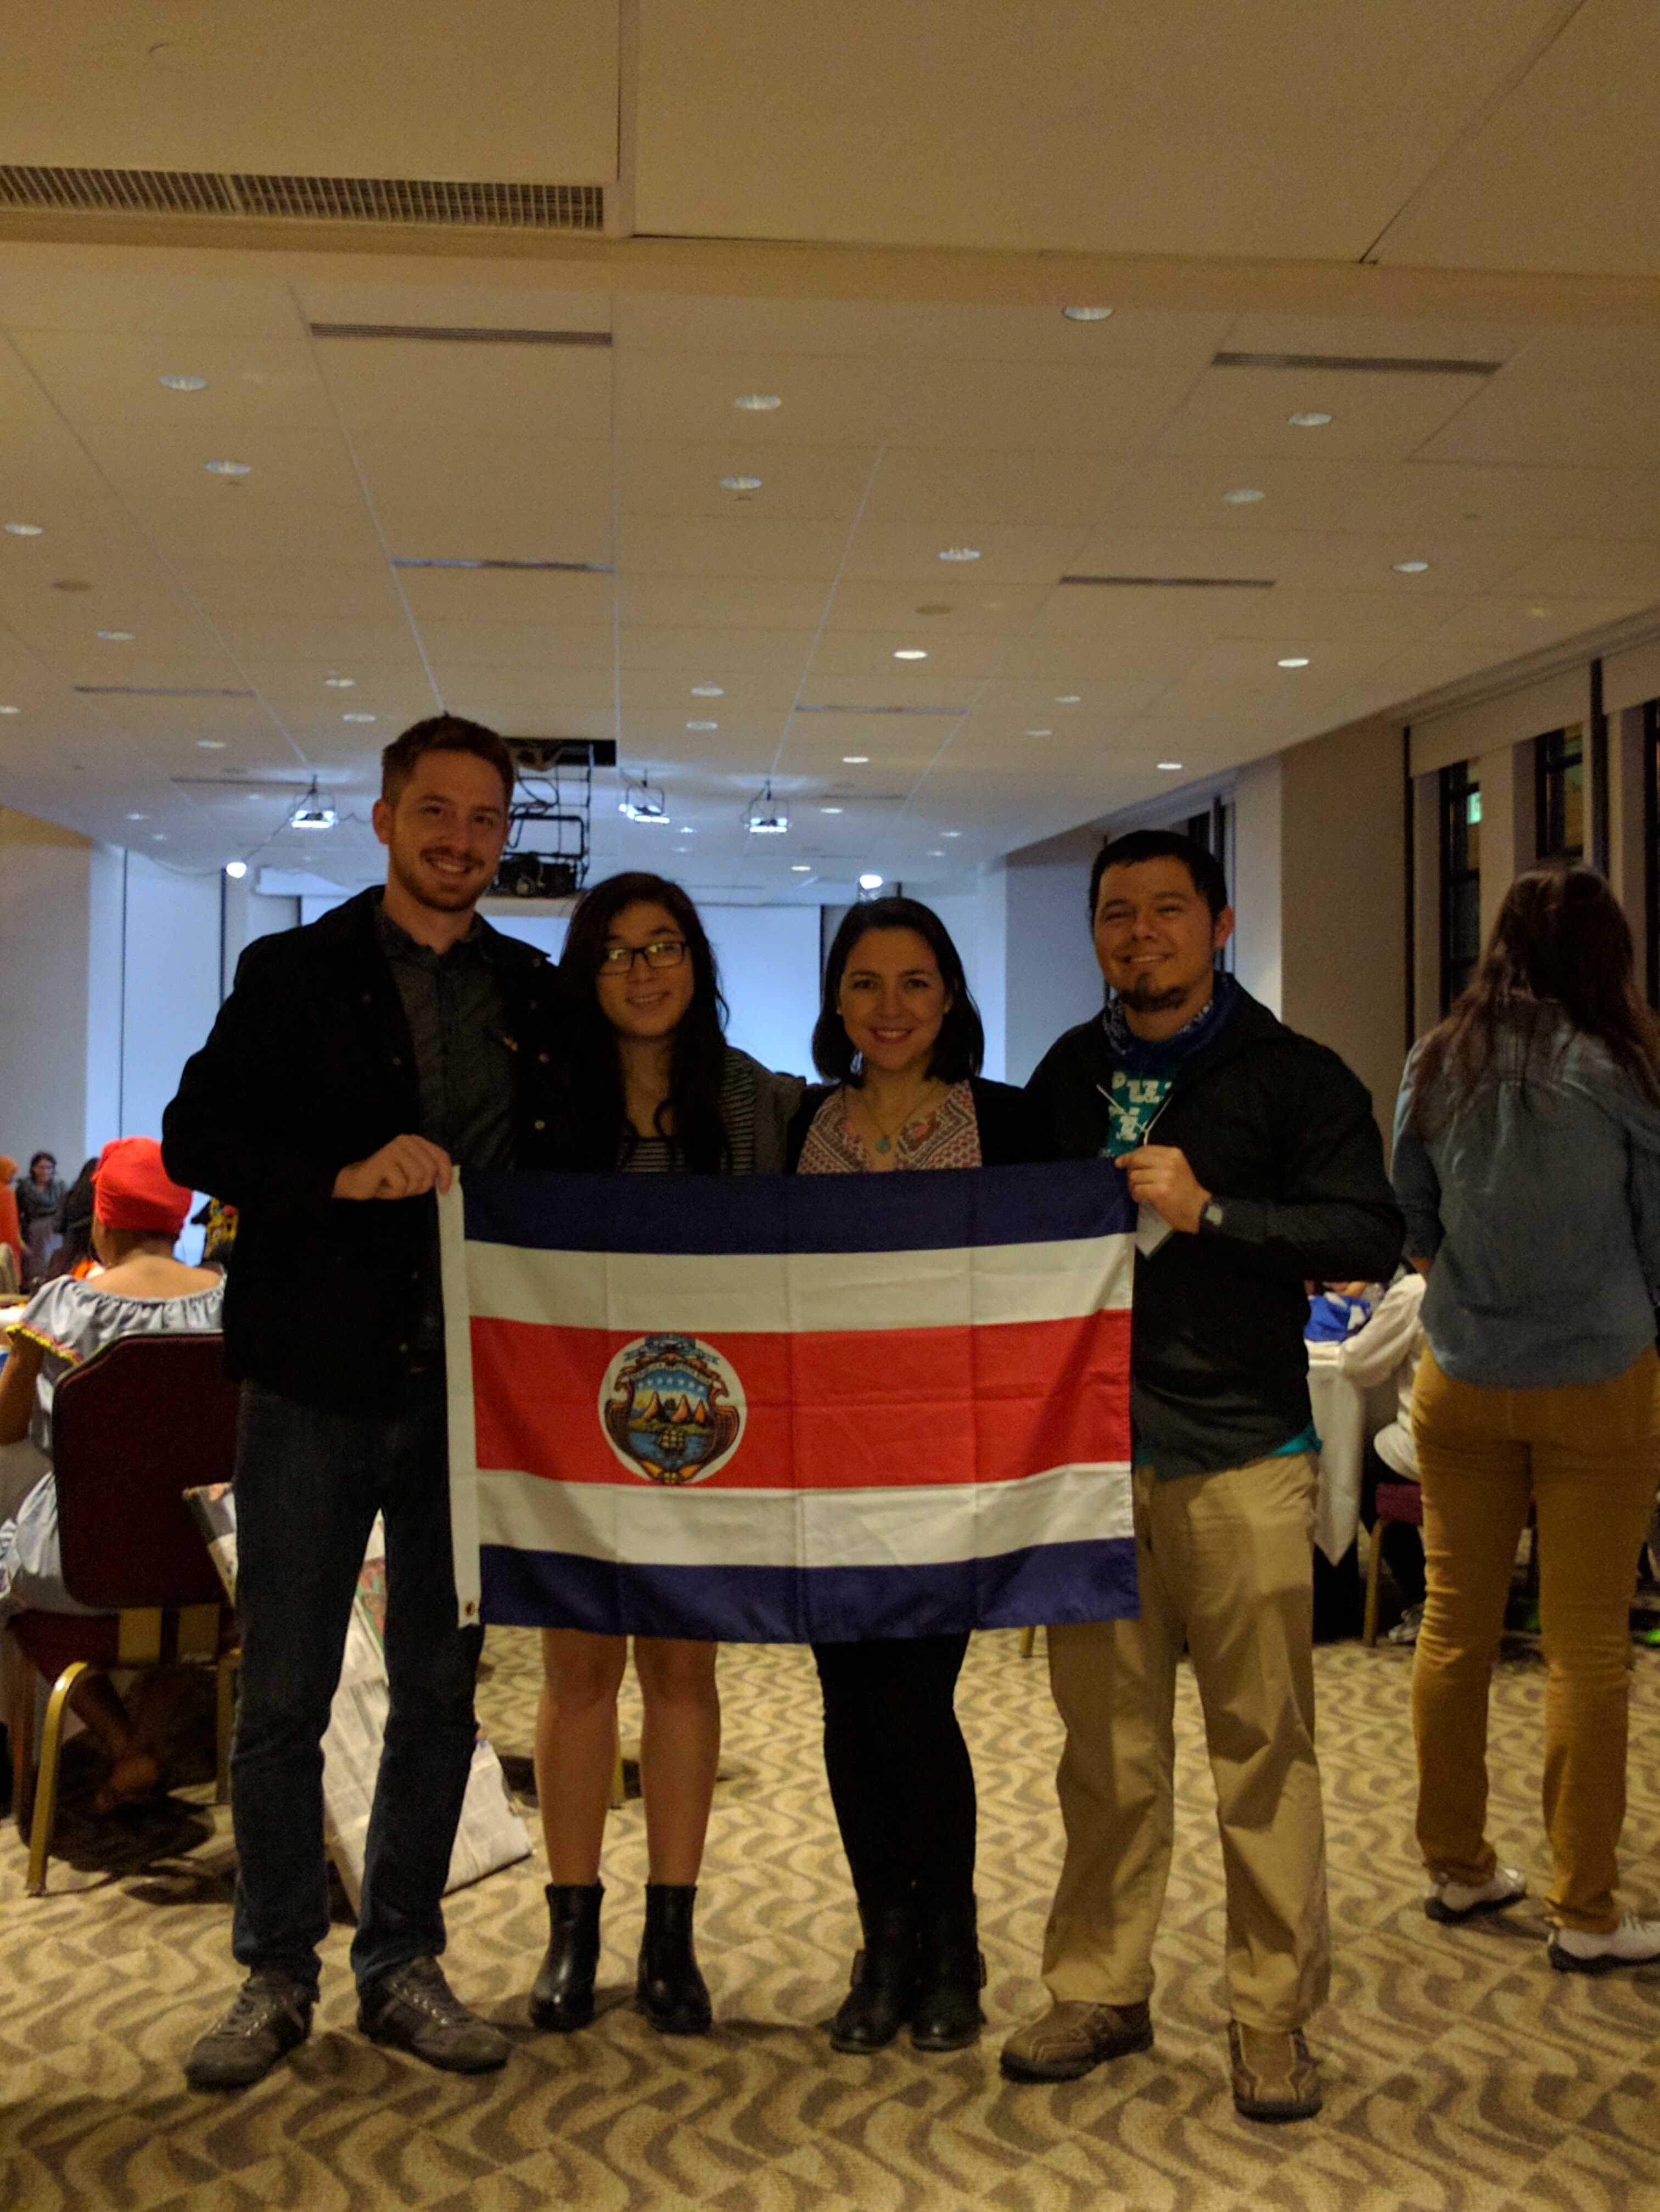 Taller en Washington, DC, con la otra delegada de Costa Rica, y los oficiales del programa Global UGRAD que me dio la beca para estudiar un semestre de intercambio.